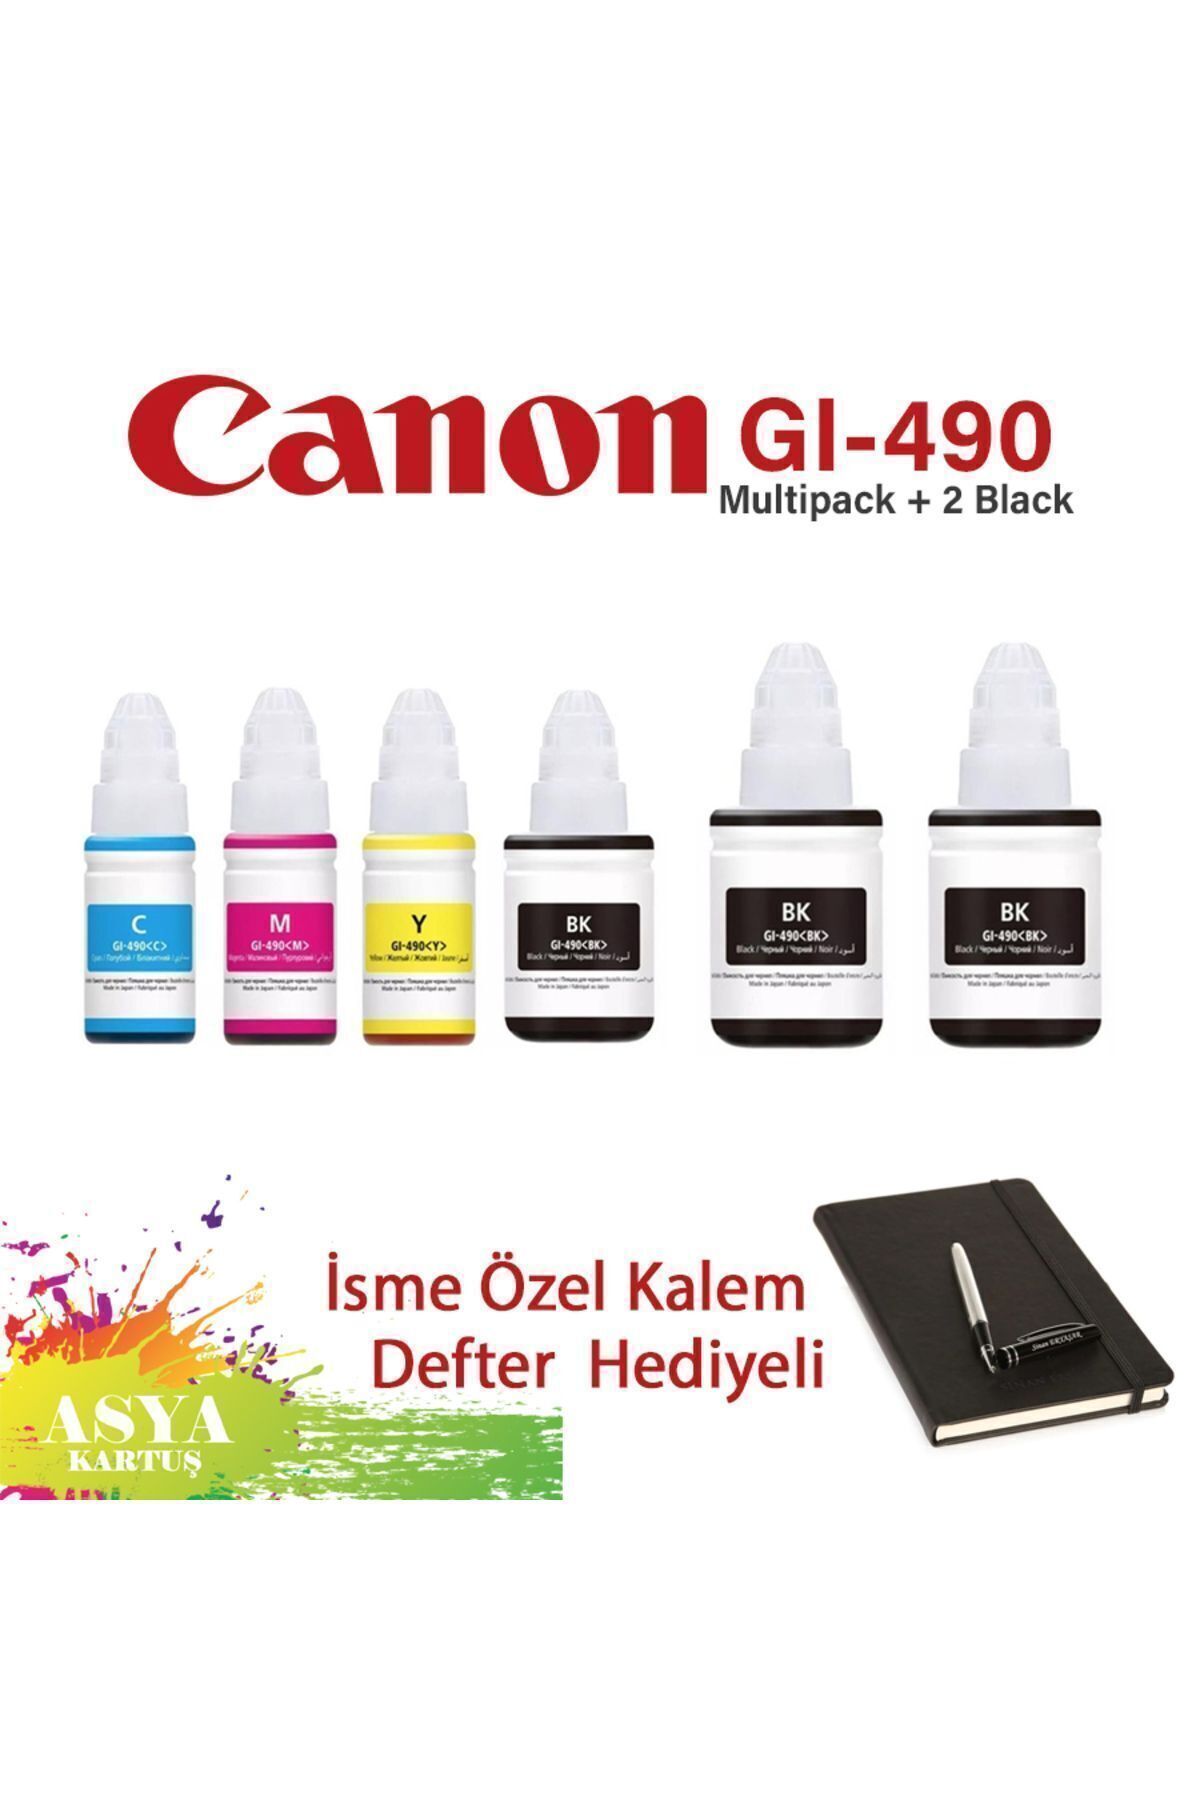 Canon Pixma G2400 Uyumlu GI-490 4 Renk Mürekkep + 2 Siyah Hediyeli   CMYK + 2 BK hediyeli Set